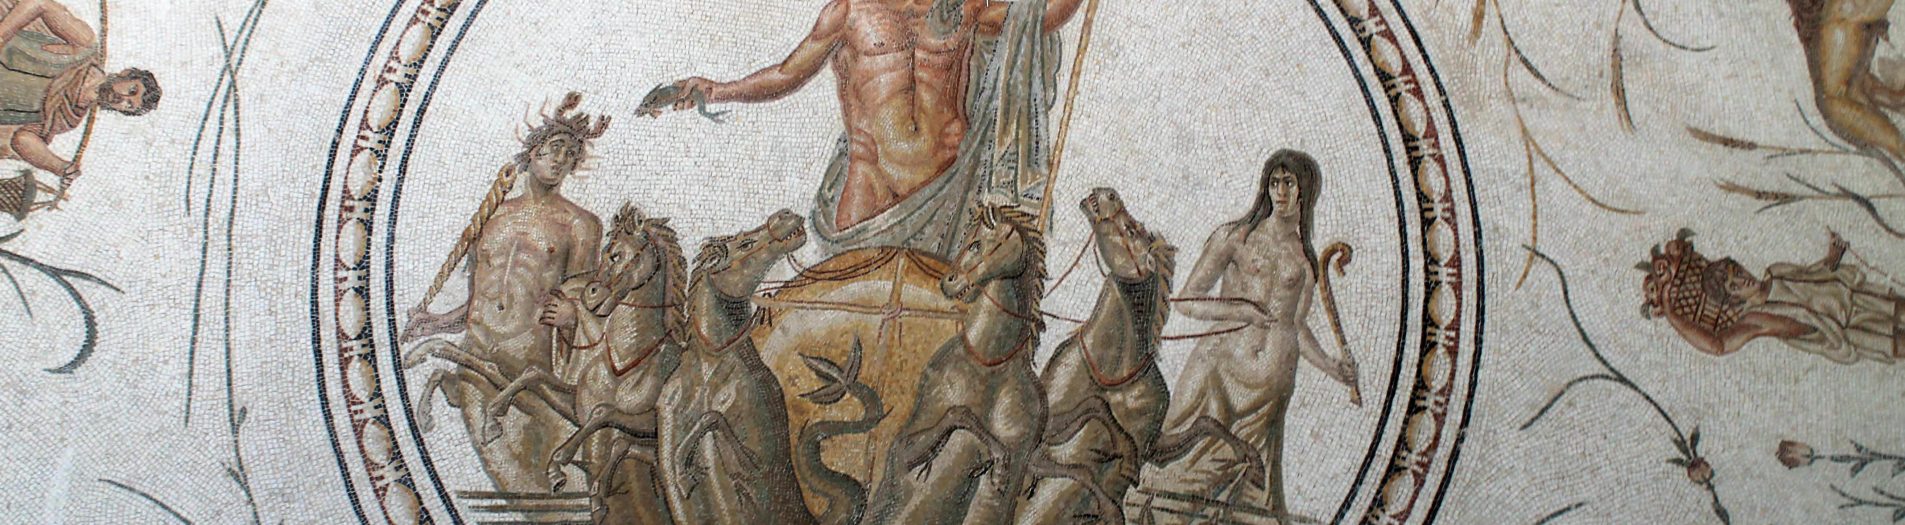 Le dieu Neptune dans la mosaïque africaine de la période romaine en Tunisie